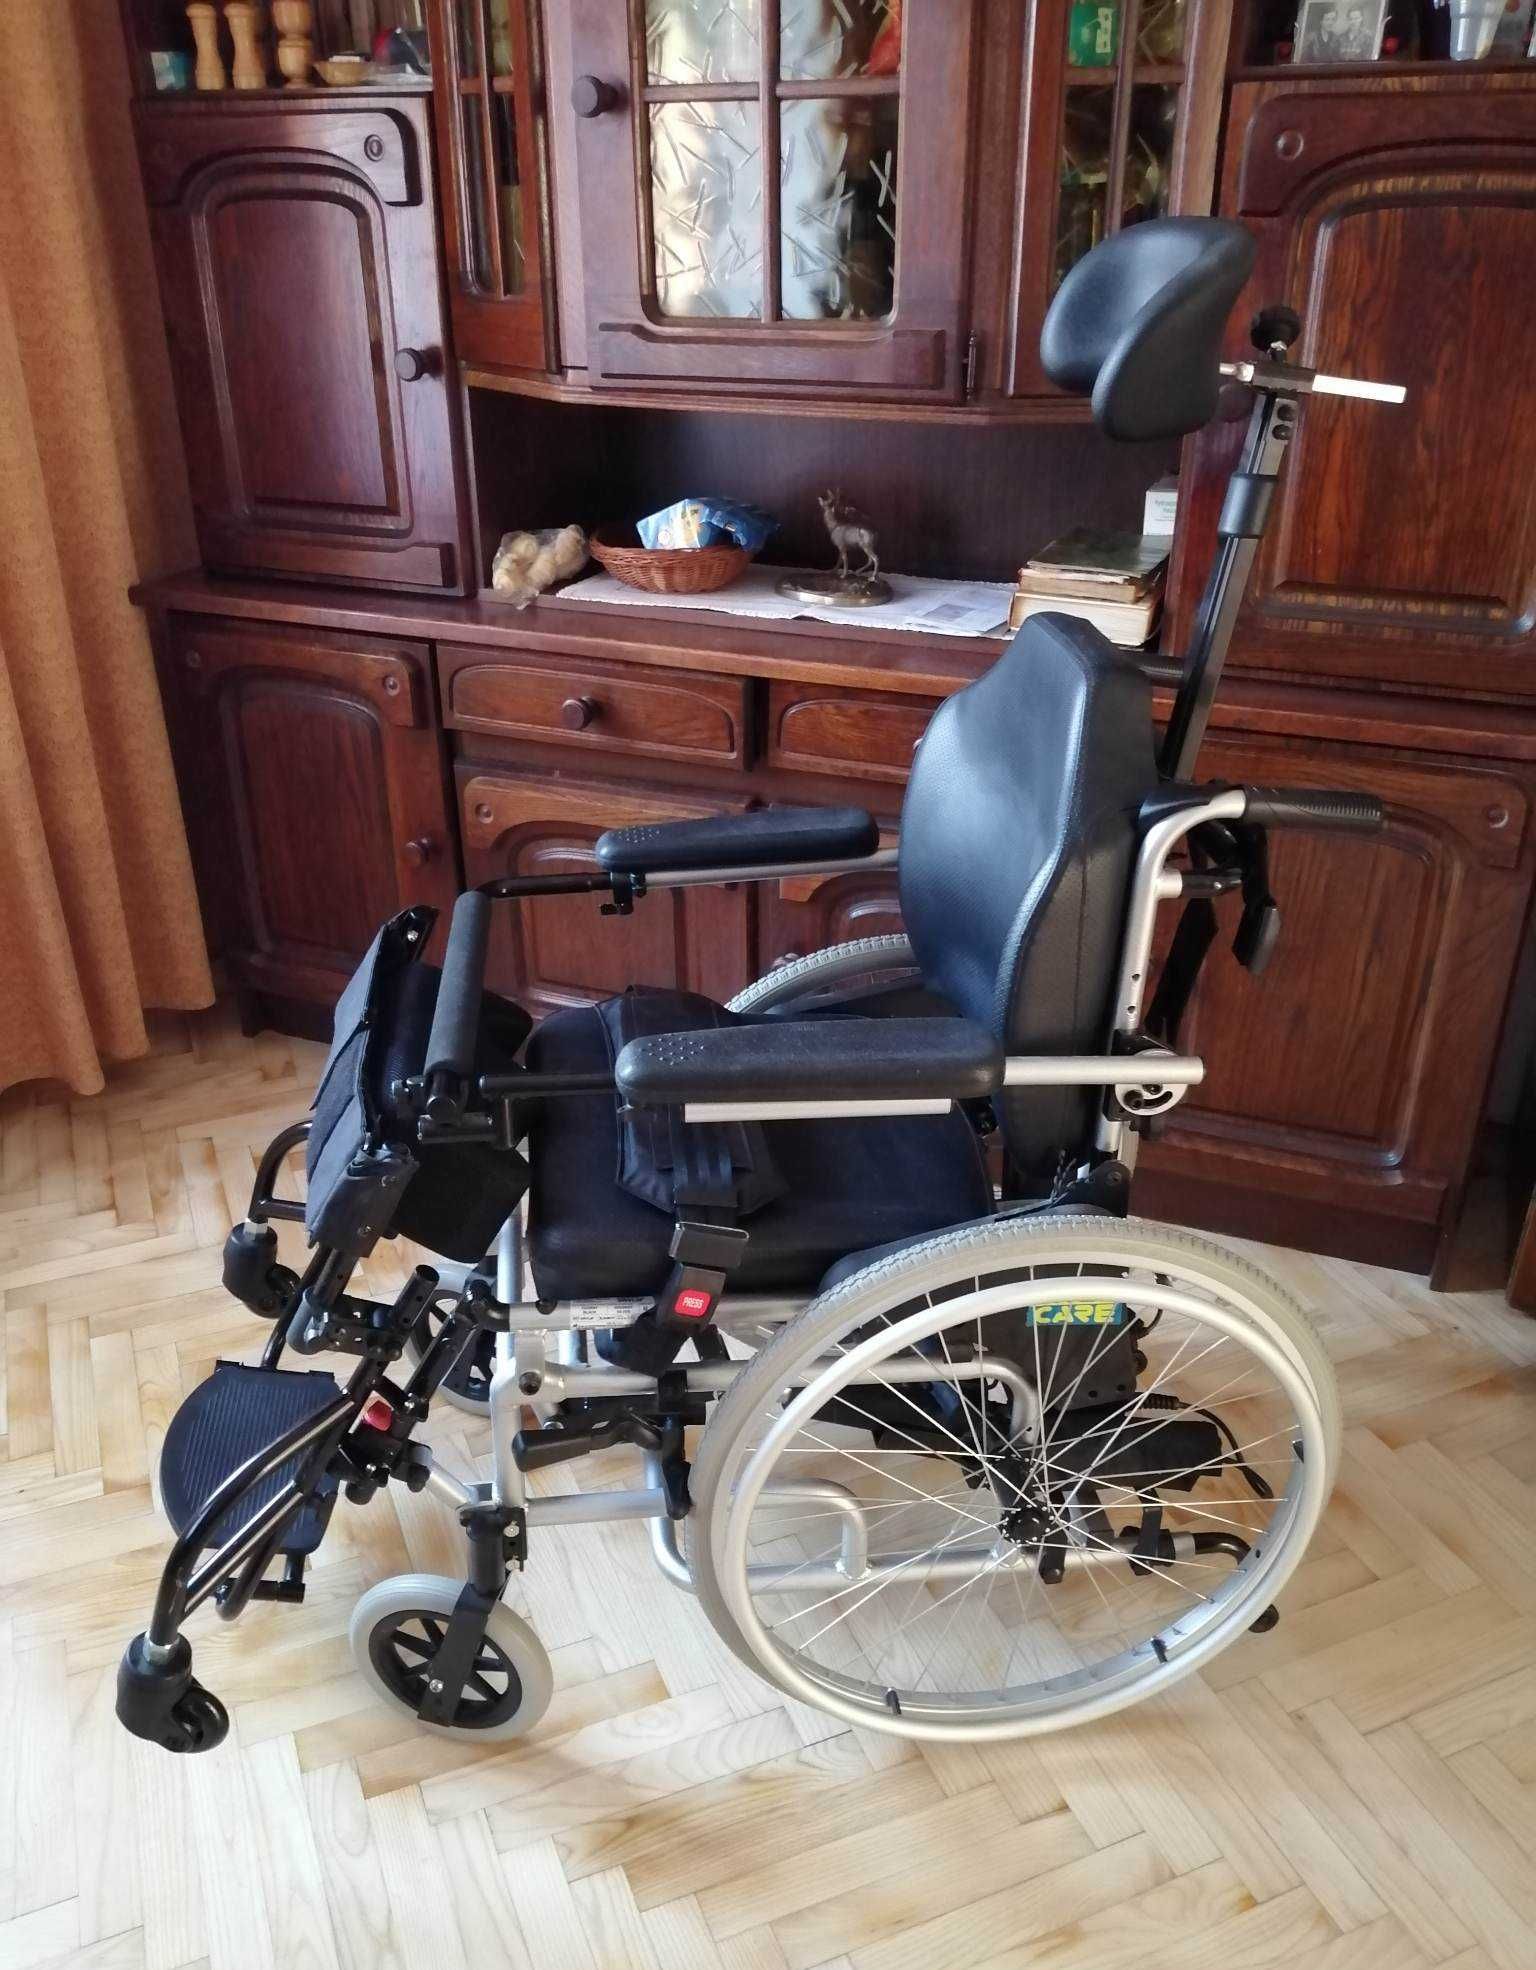 Wózek inwalidzki z funkcją pionizatora firmy Vitea Care model Hero